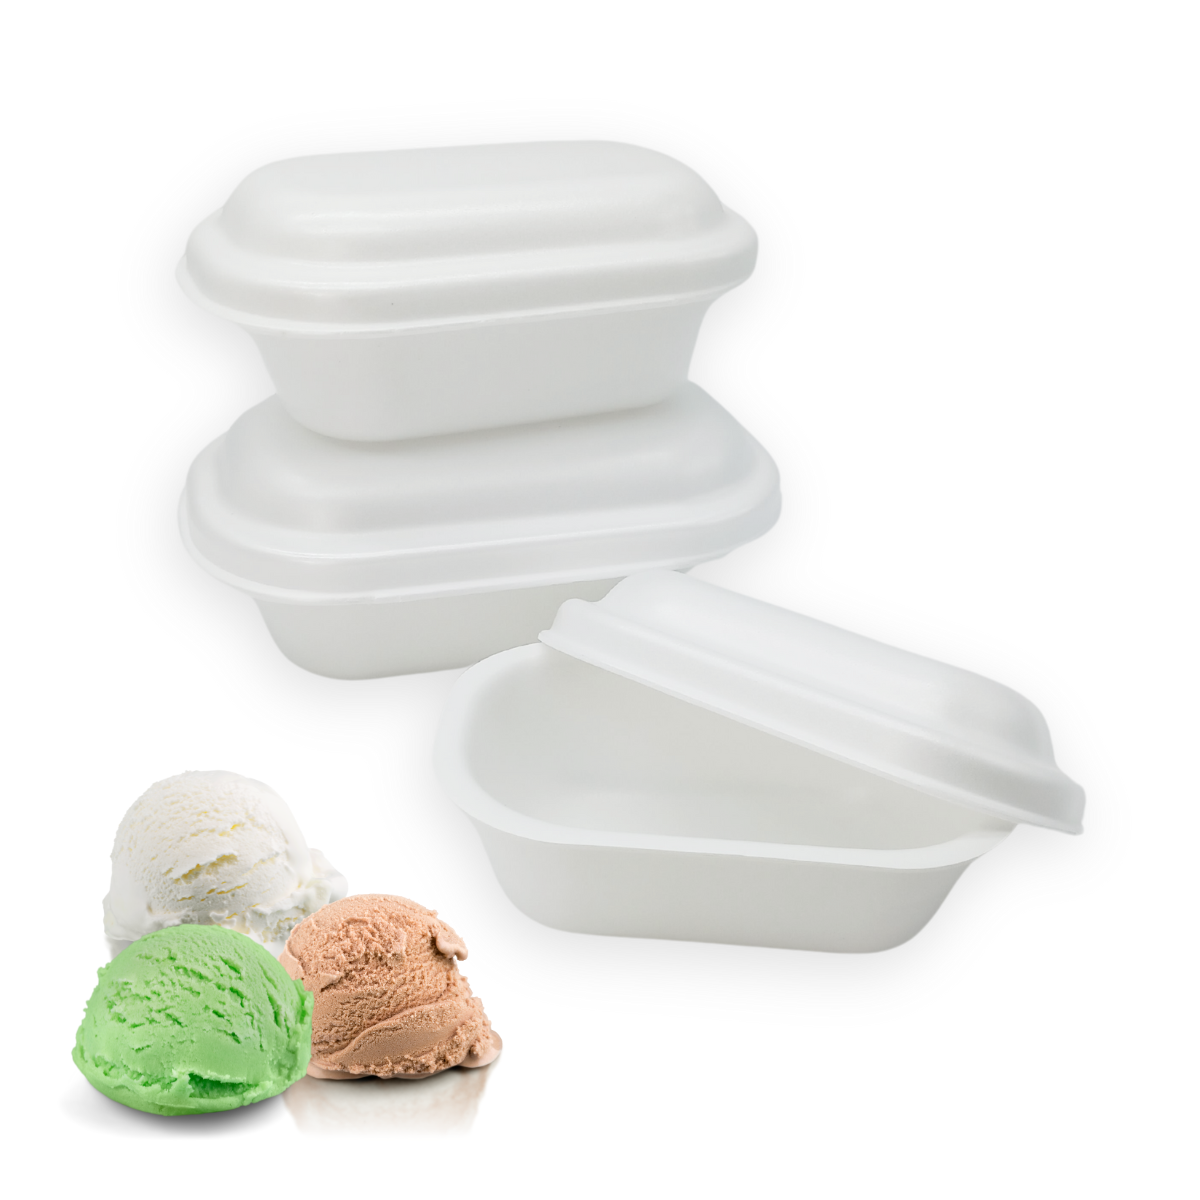 100pz Vaschetta gelato termica bianca con coperchio € 0,5 Cad + Iva